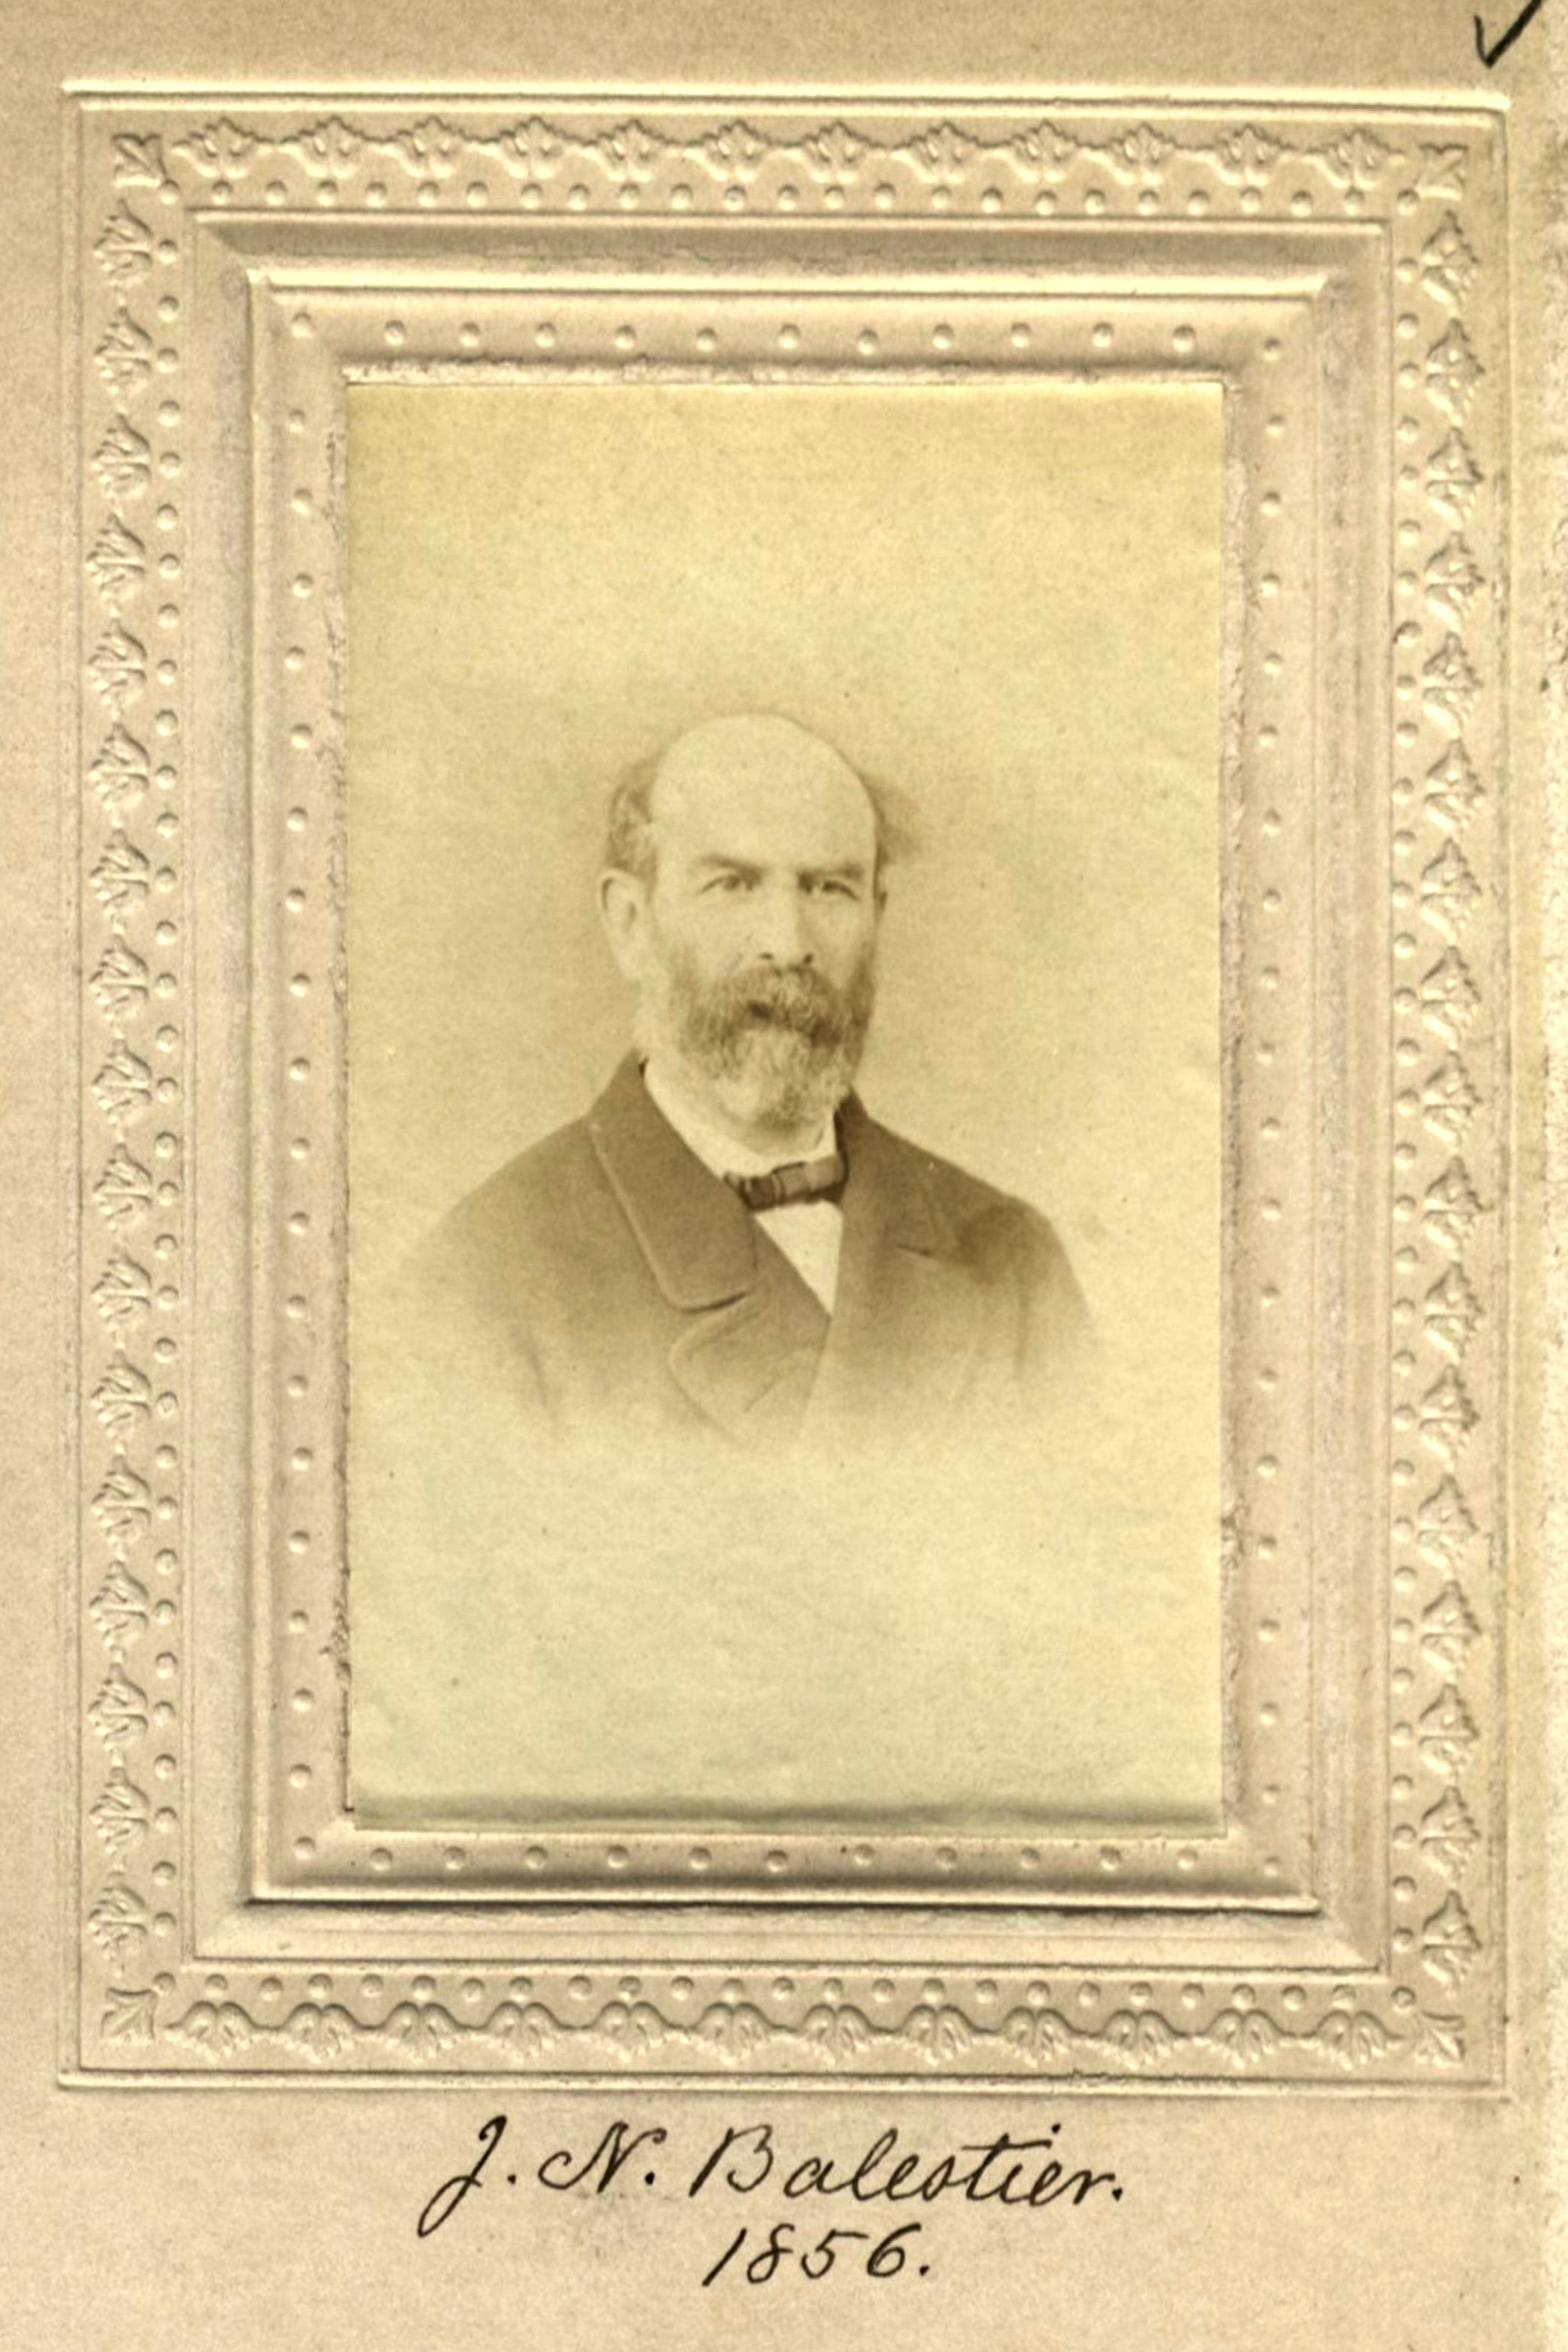 Member portrait of Joseph N. Balestier